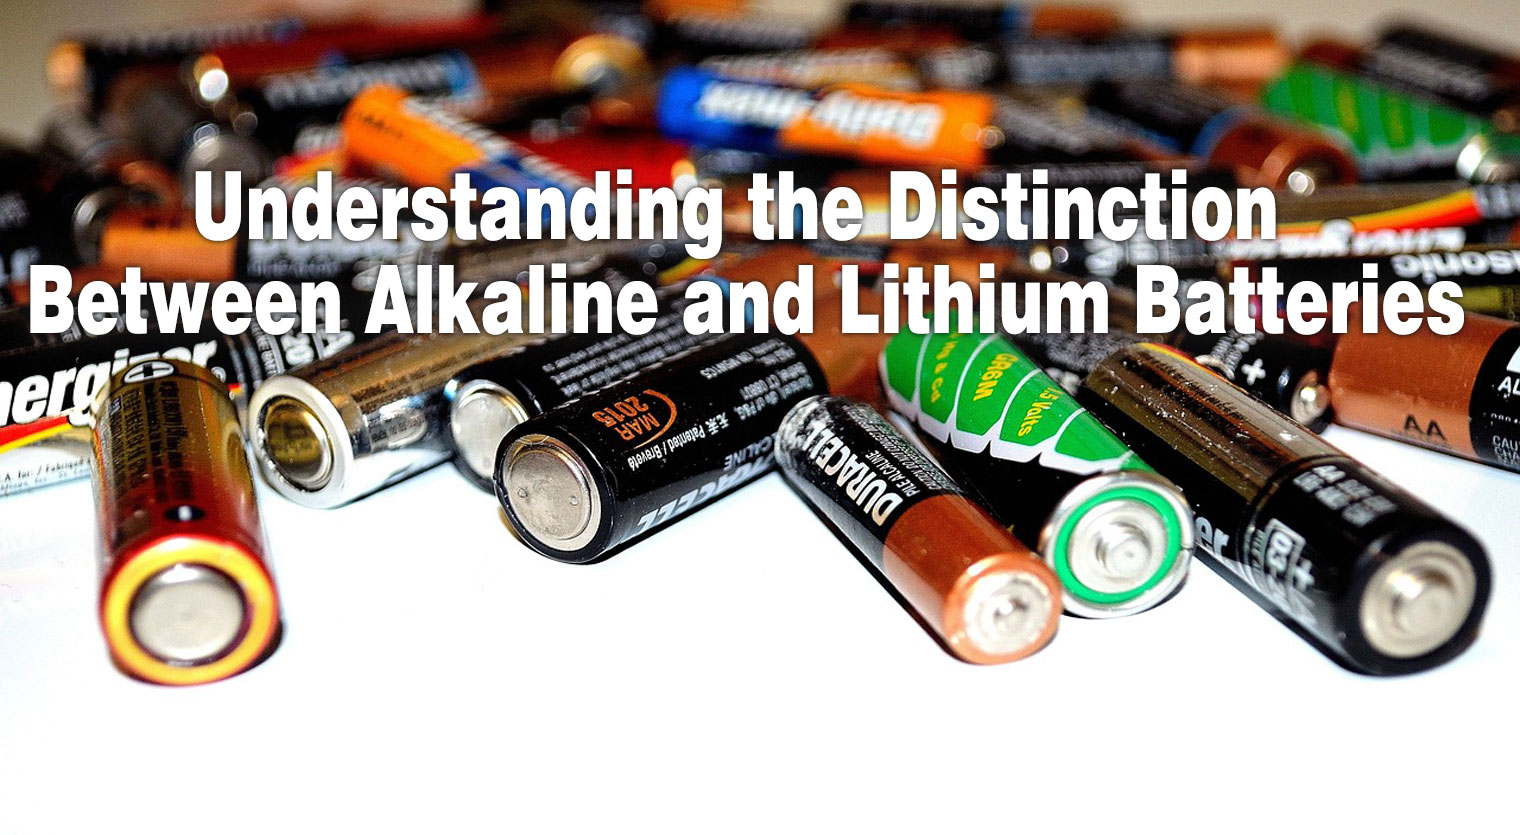 क्षारीय और लिथियम बैटरियों के बीच अंतर को समझना